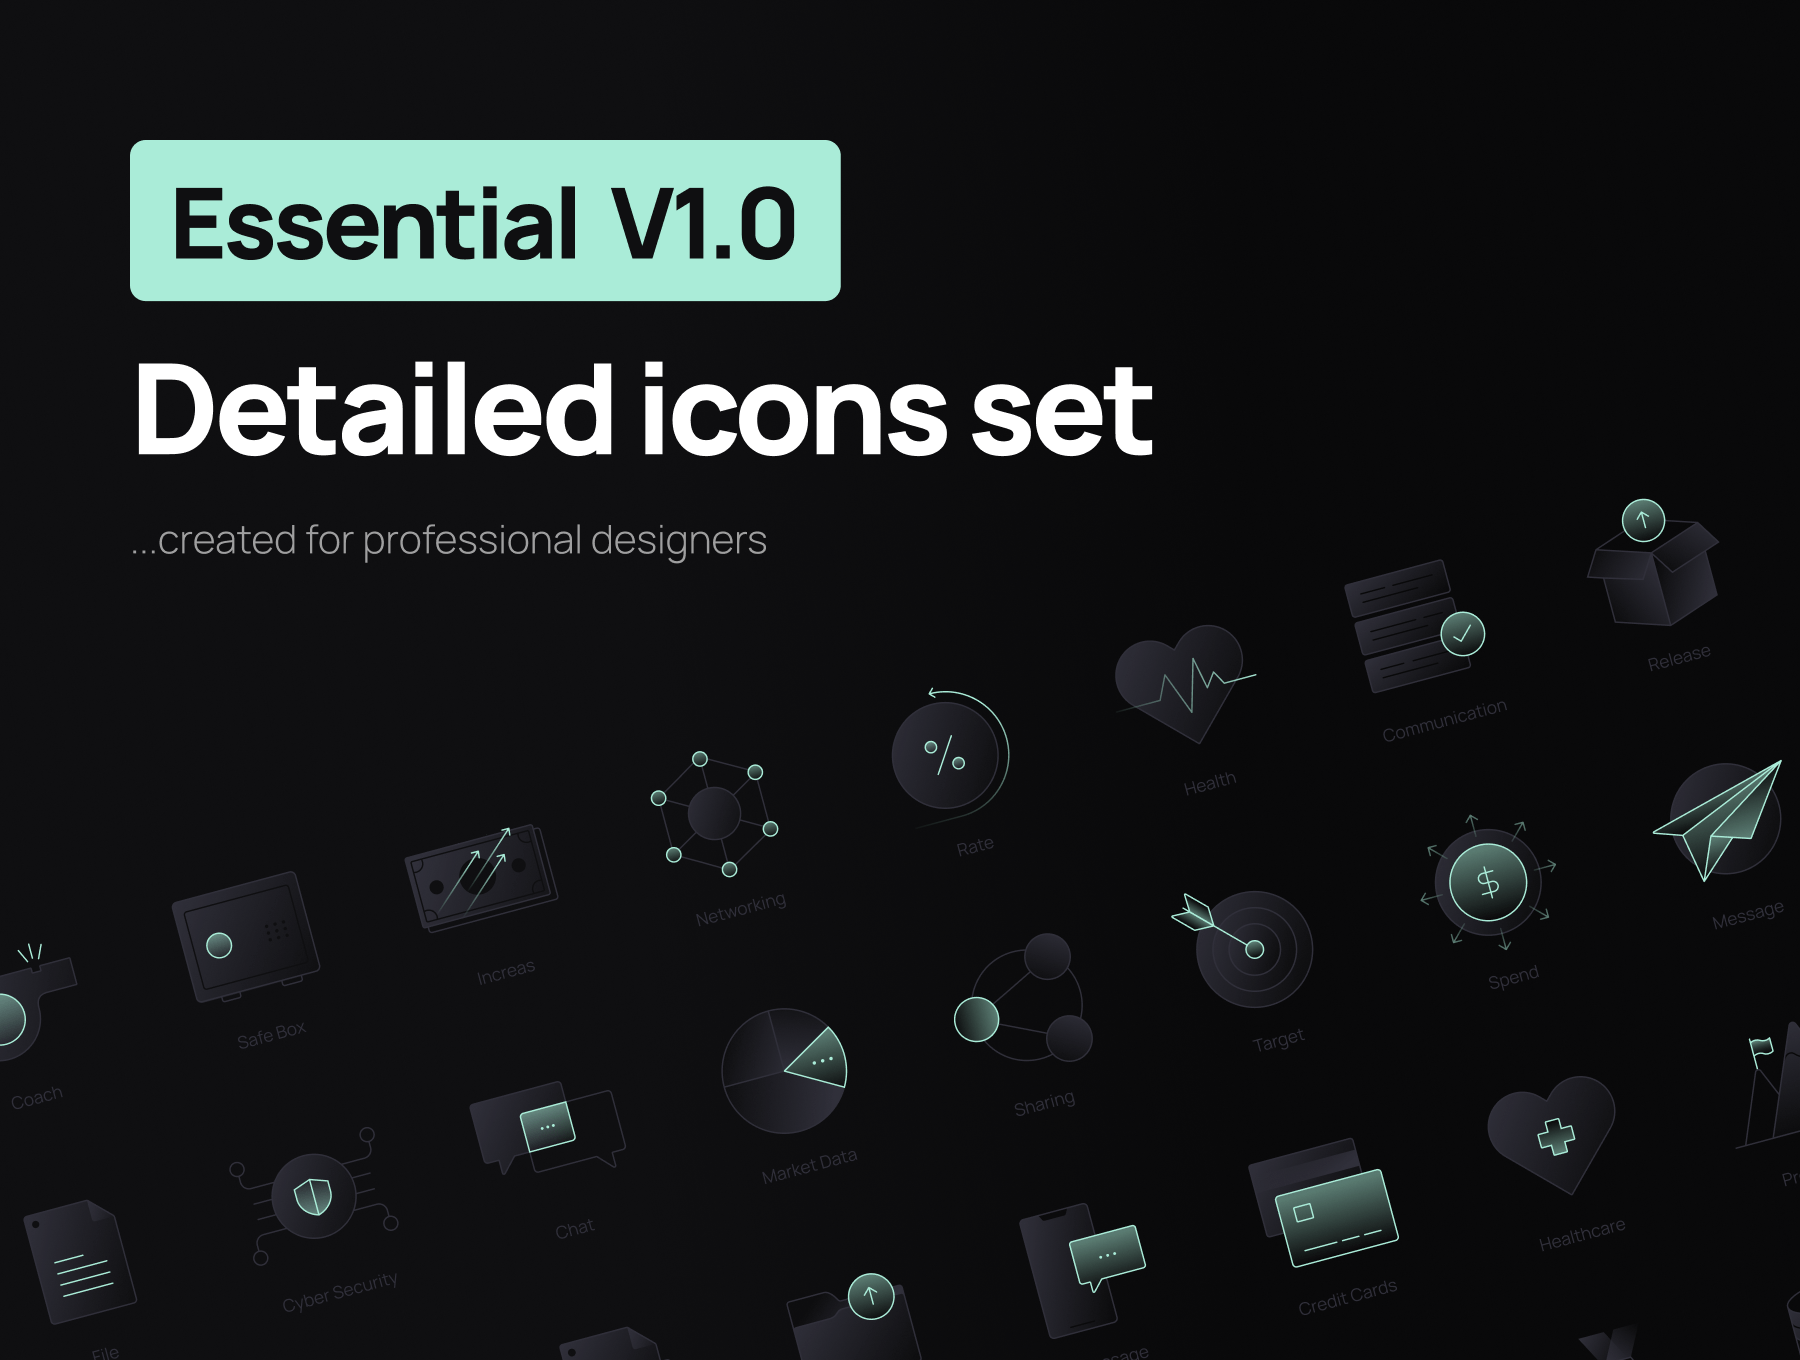 Essential V1.0 / 详细图标套装 Essential V1.0 / Detailed Icons Set figma格式-UI/UX-到位啦UI